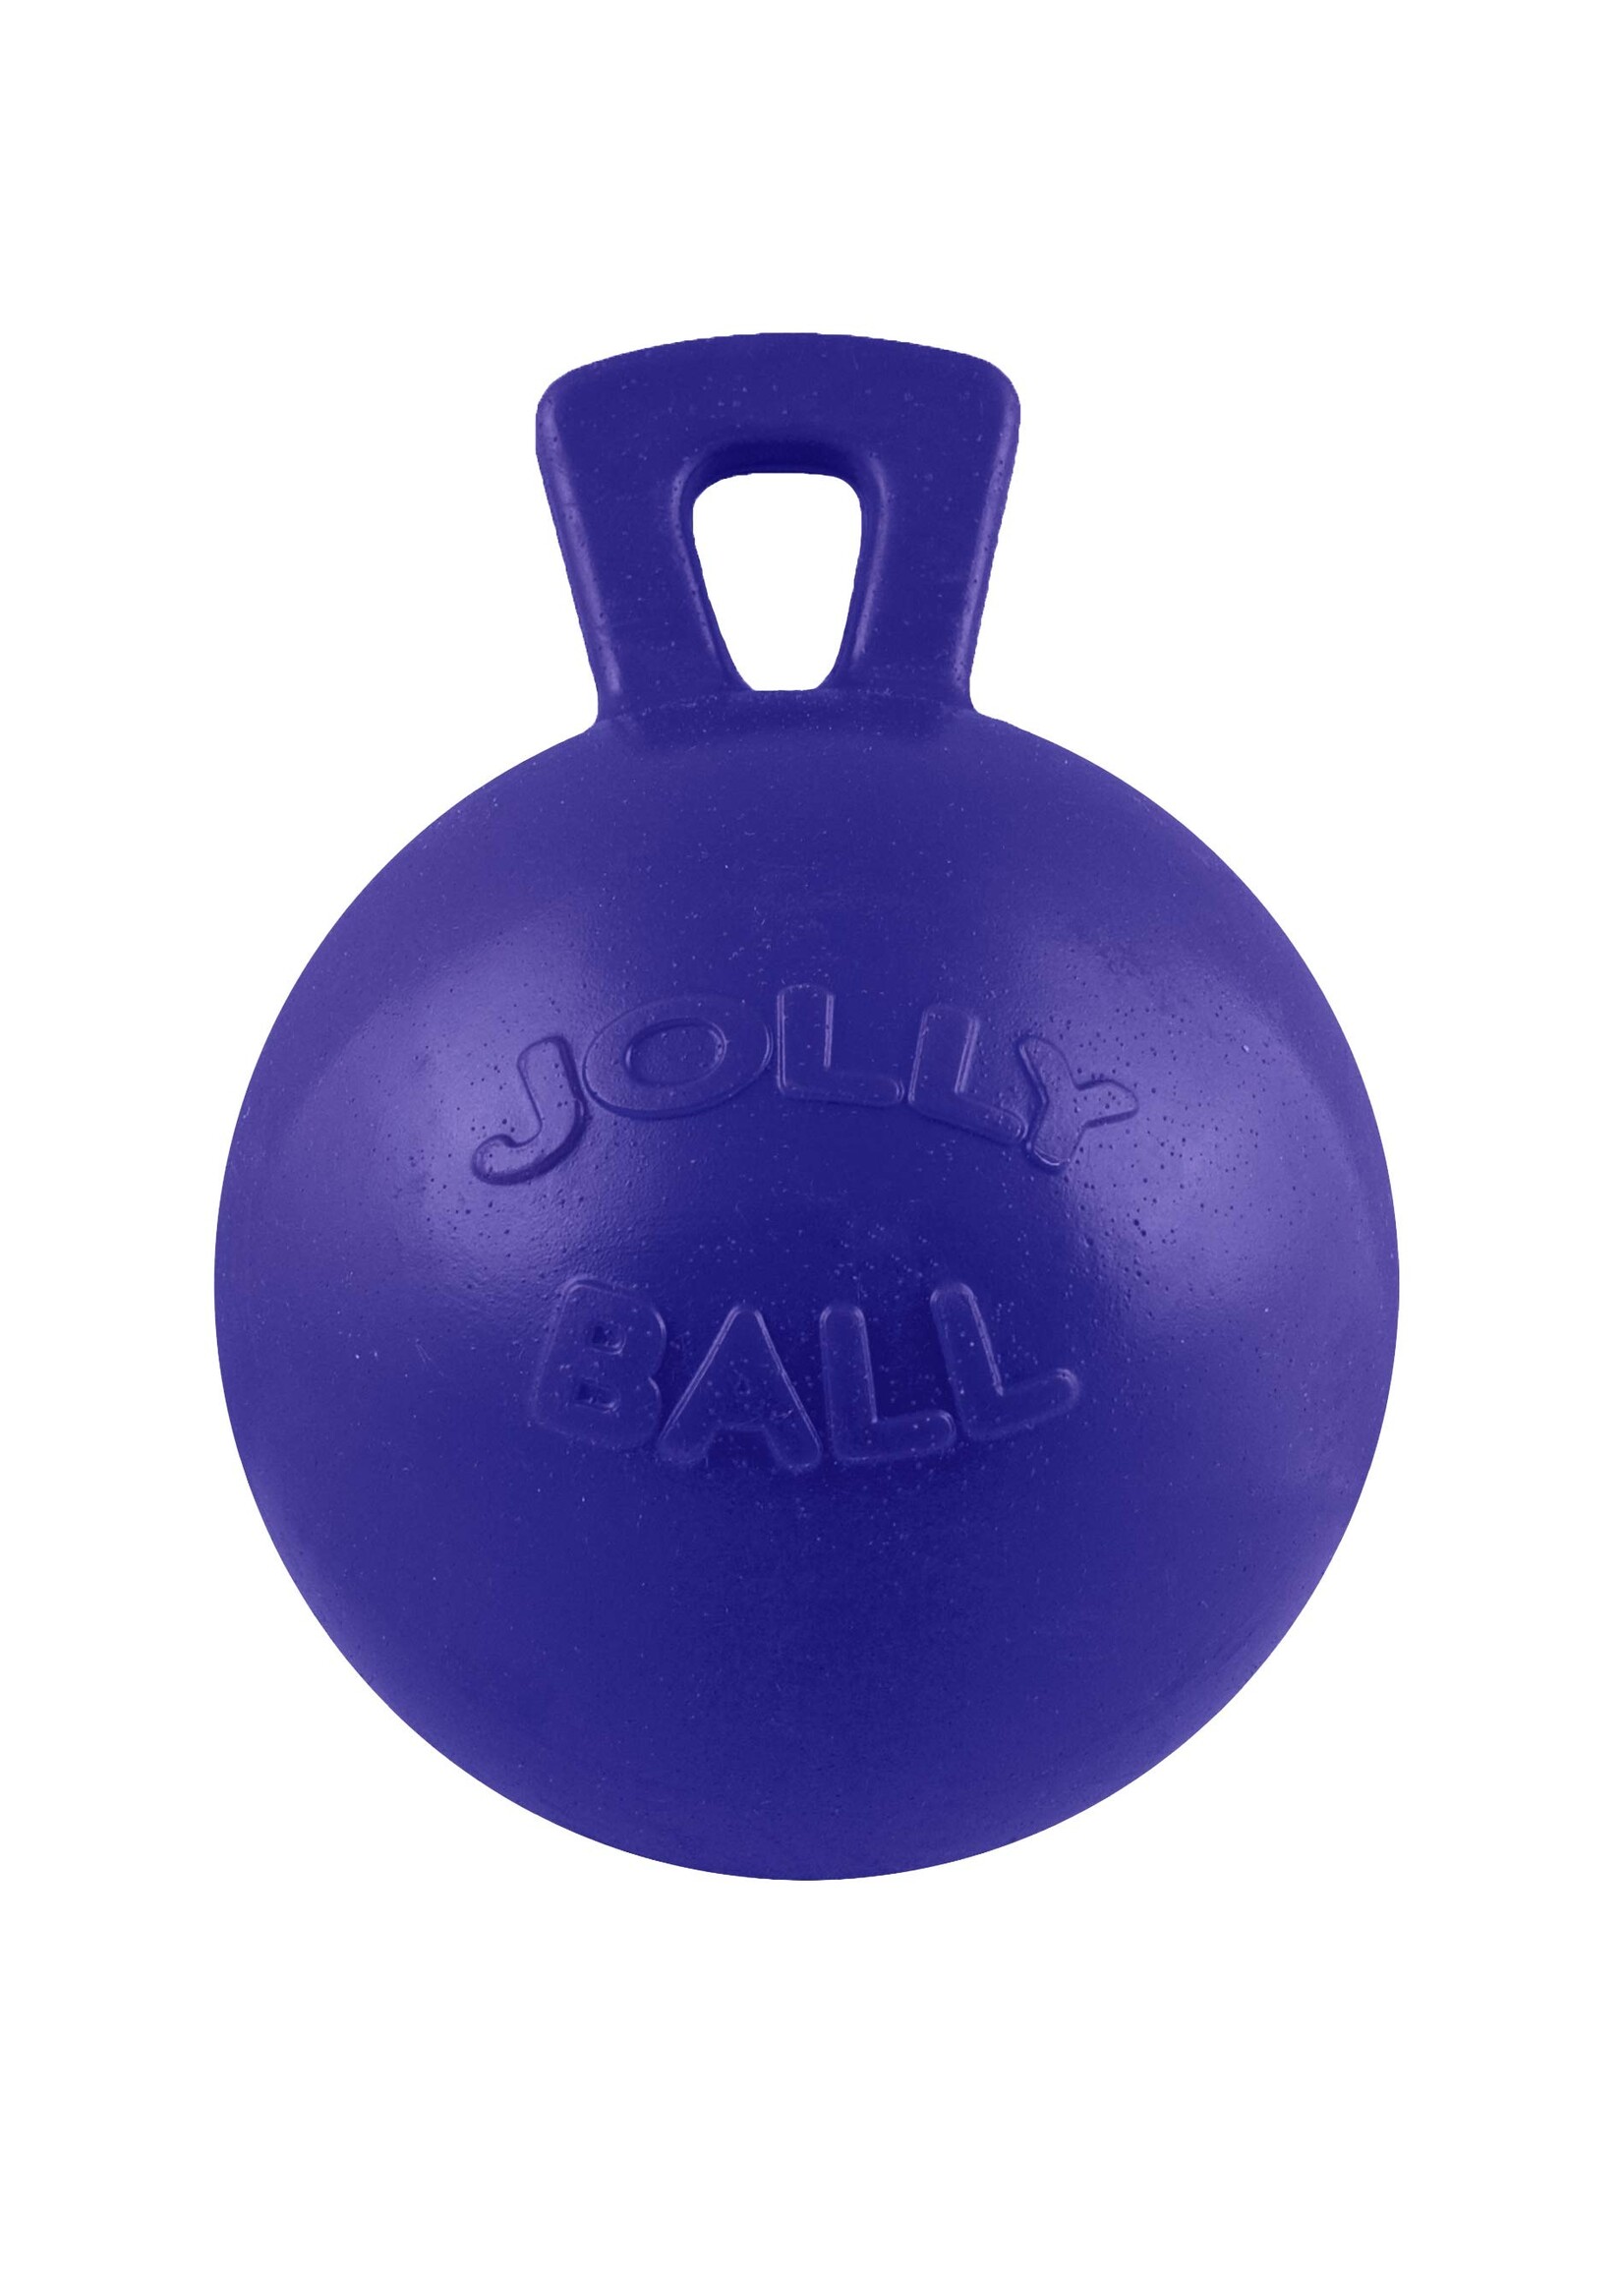 Jolly Ball Jolly Ball 10" -